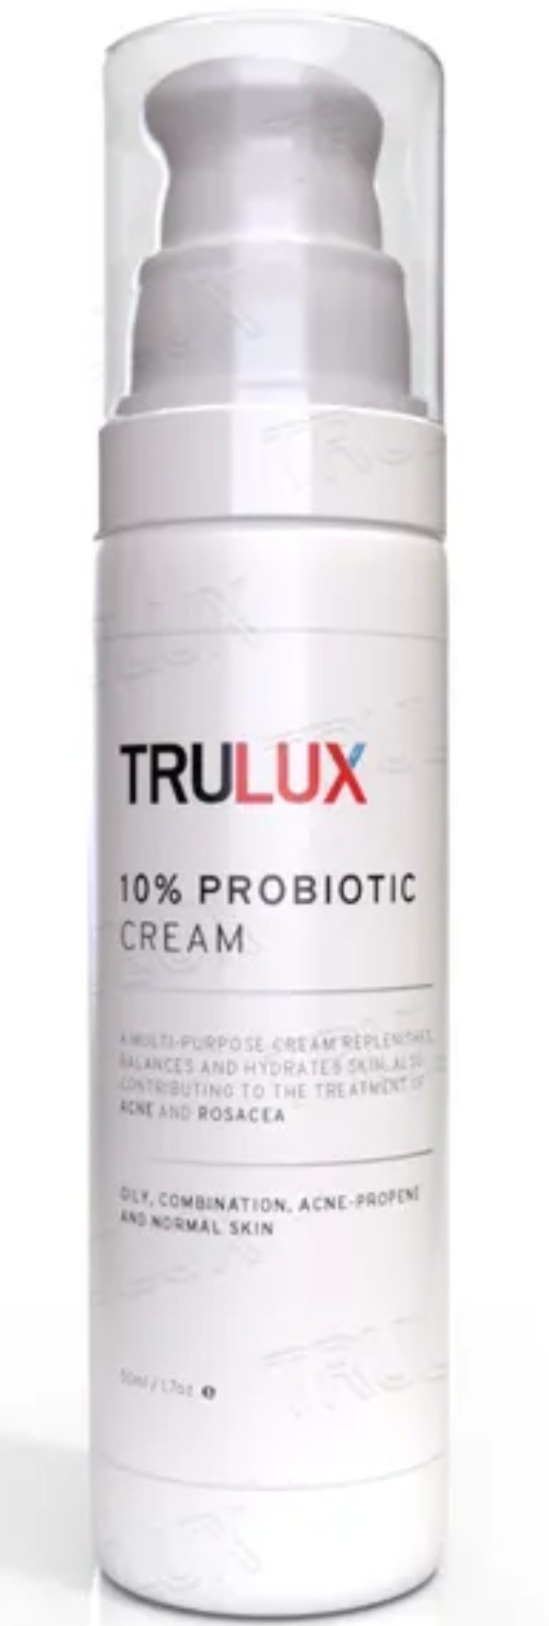 Trulux 10% Probiotic Cream